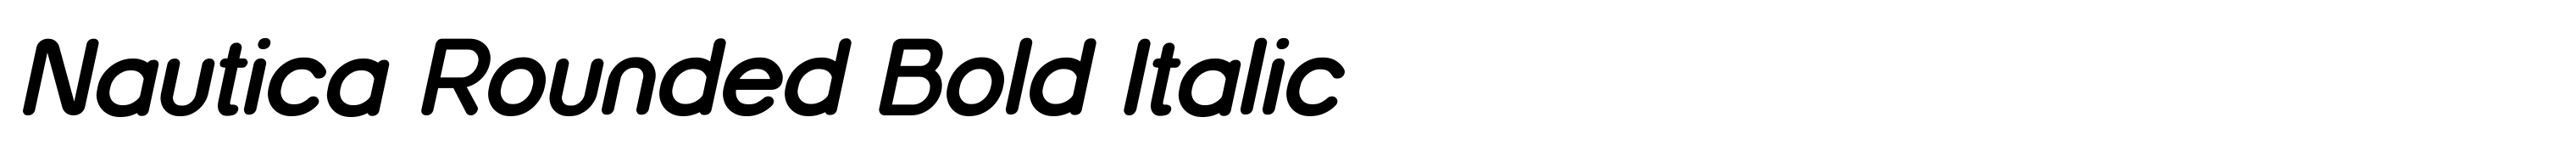 Nautica Rounded Bold Italic